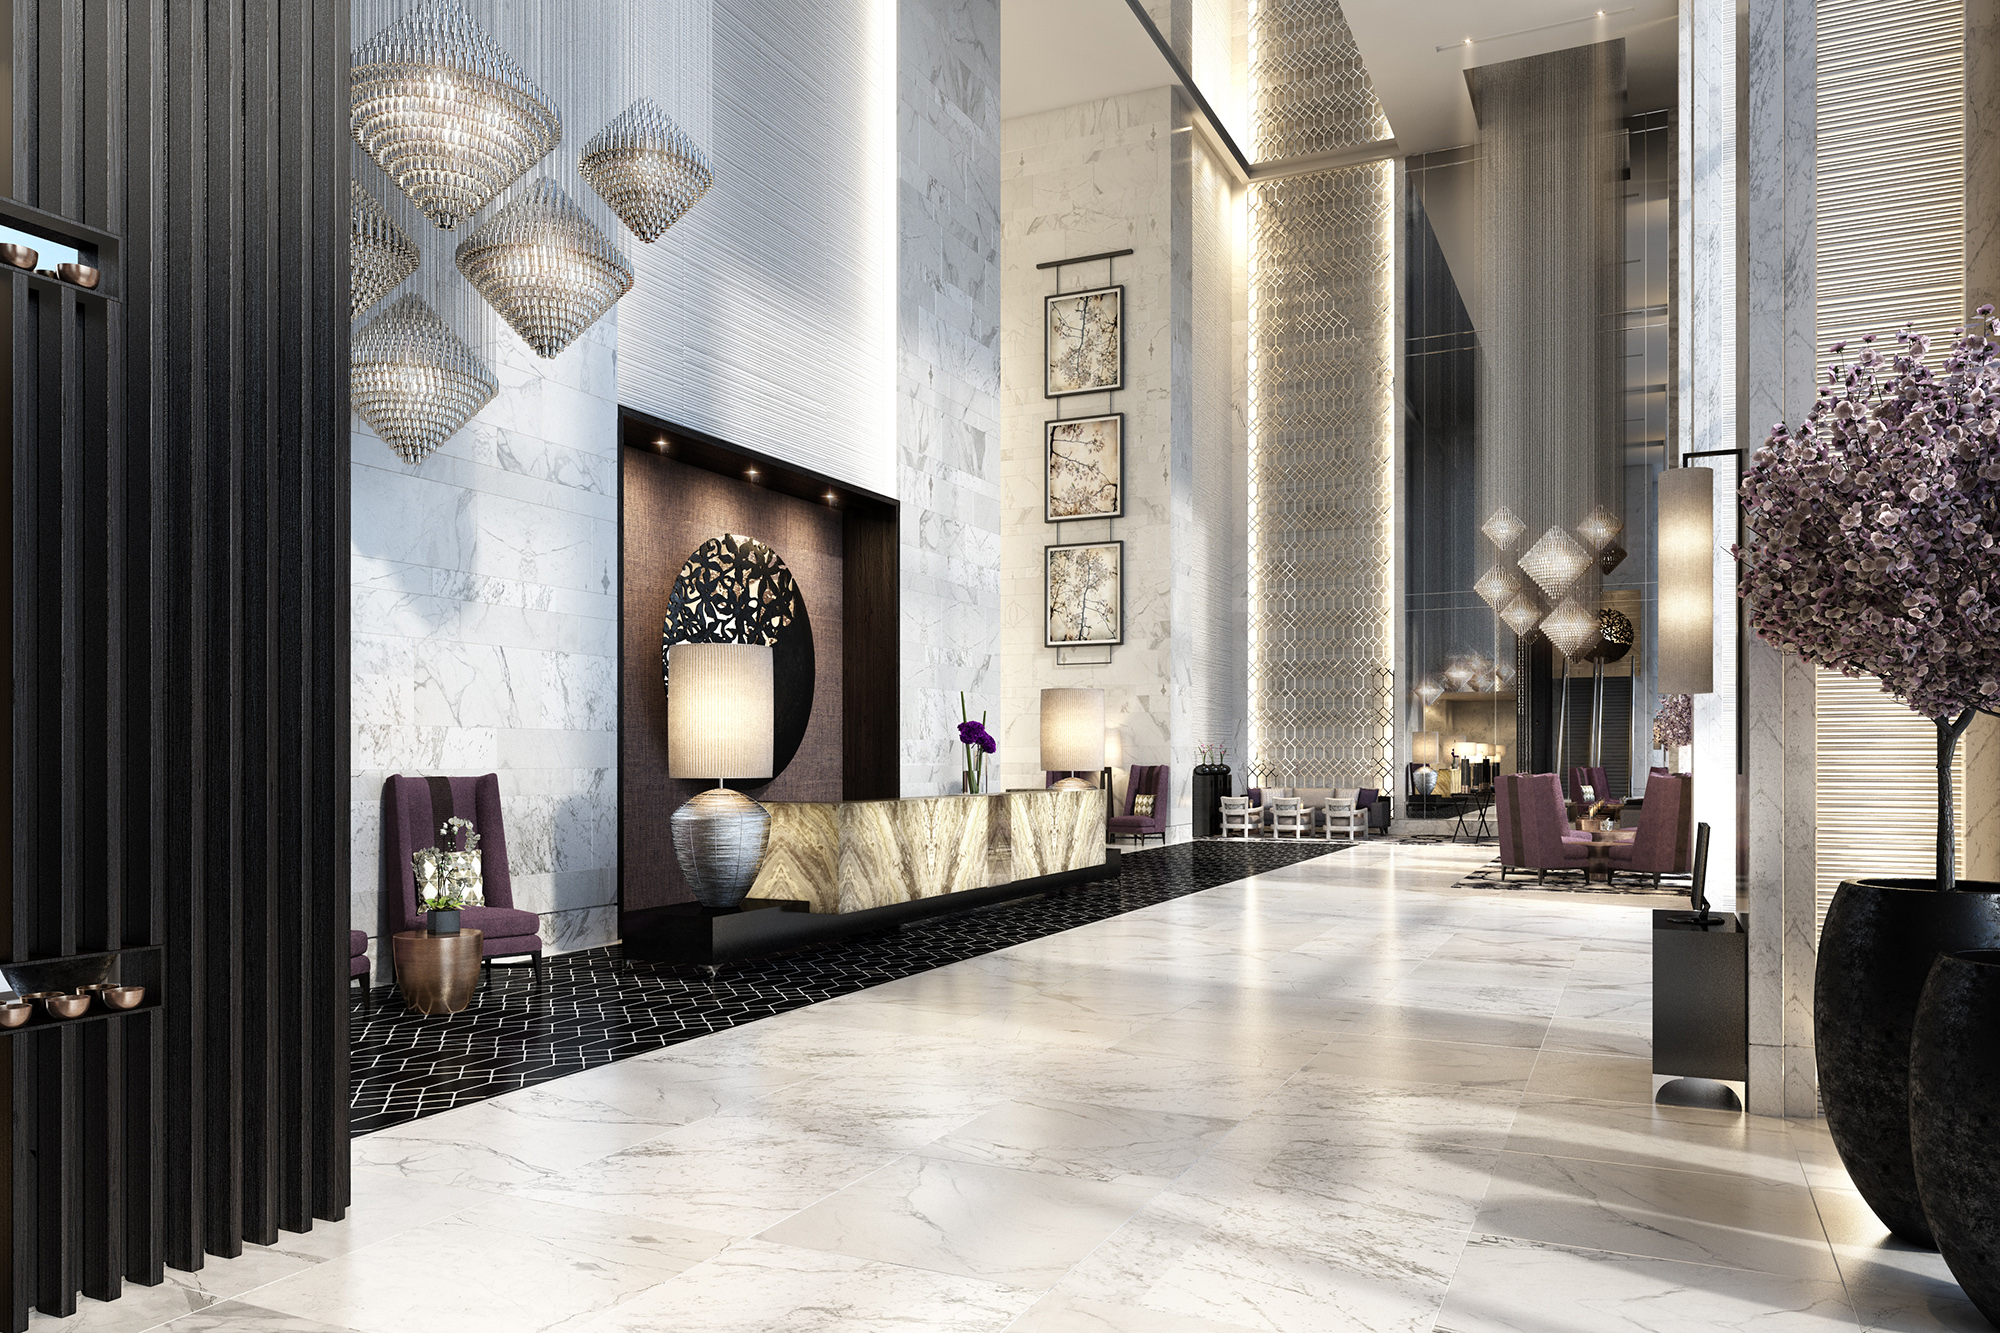 Steigenberger setzt auf neue Hotels in Dubai und Baden-Baden